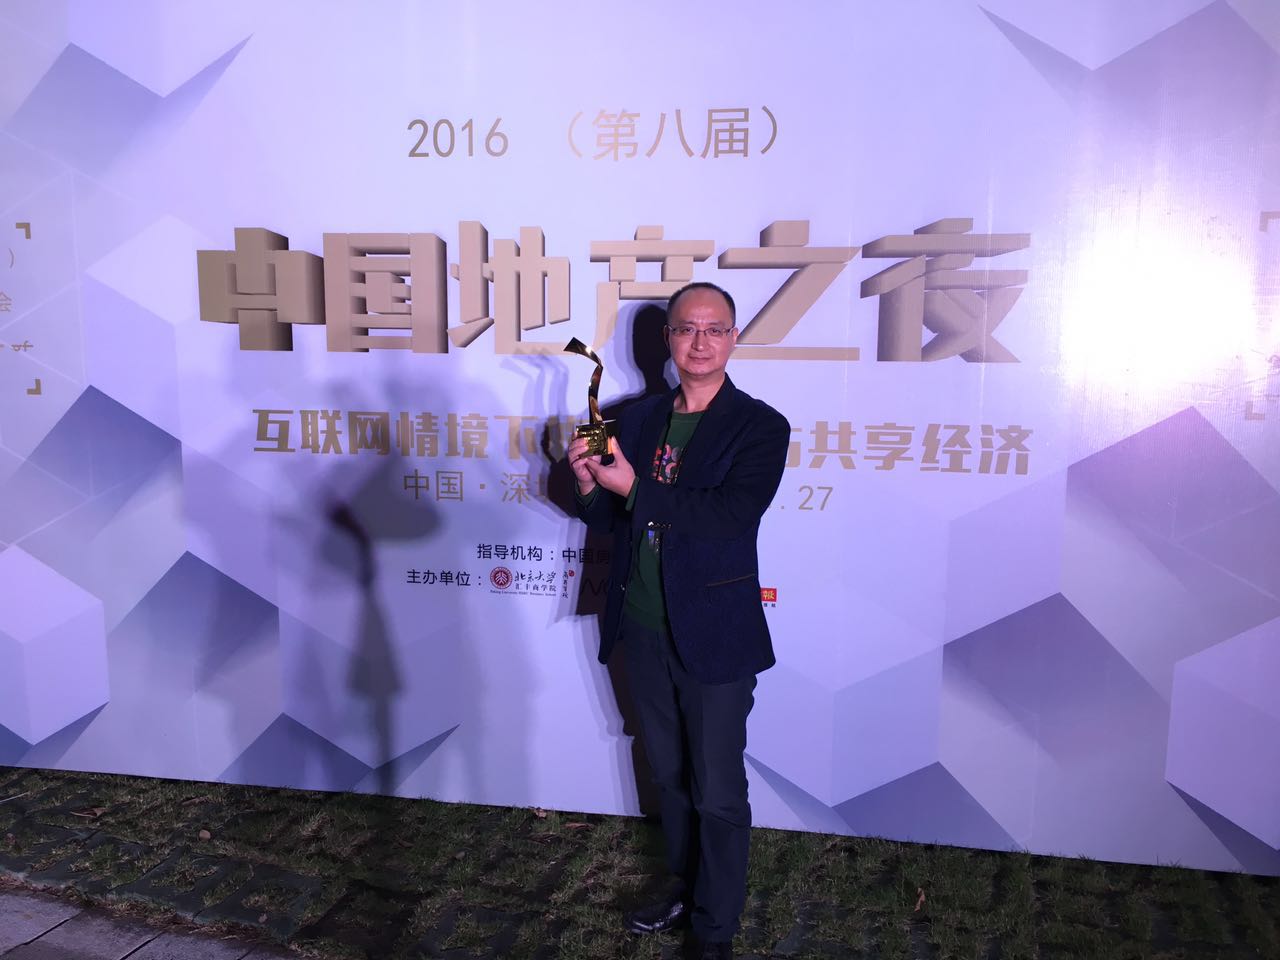 IBC荣获2016年“年度最佳创新奖”